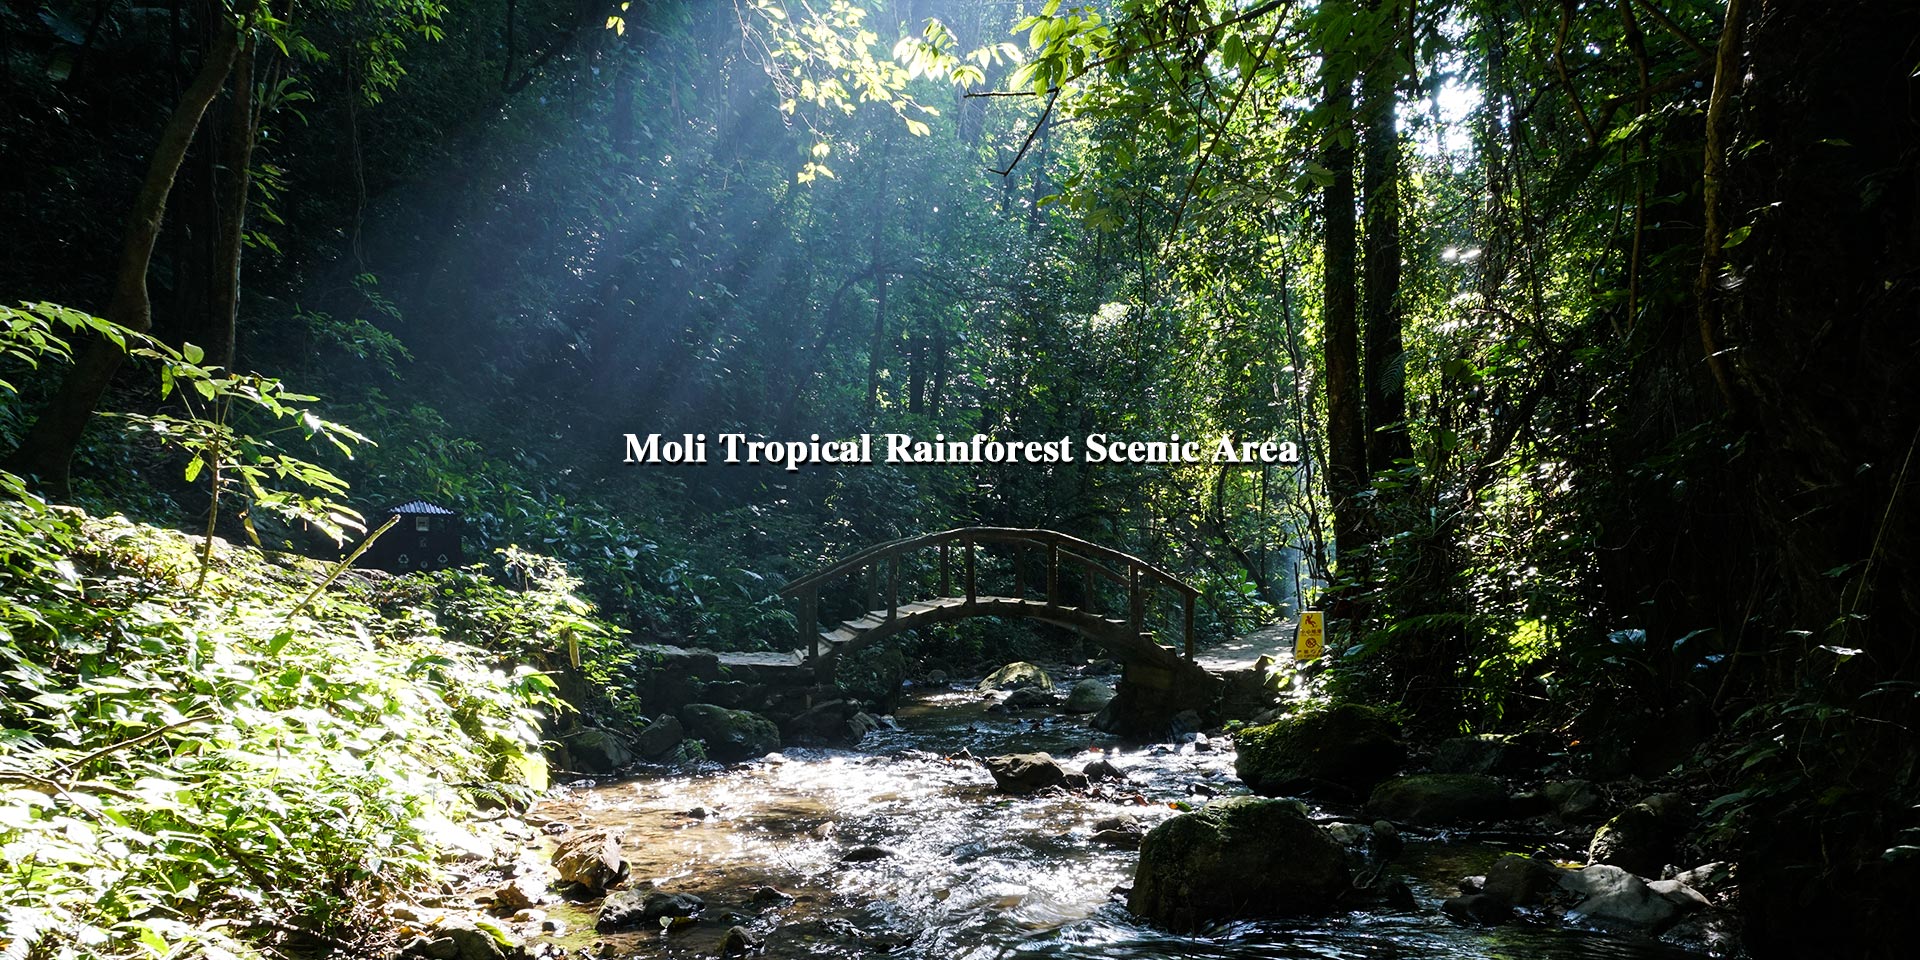 Moli Tropical Rainforest Scenic Area